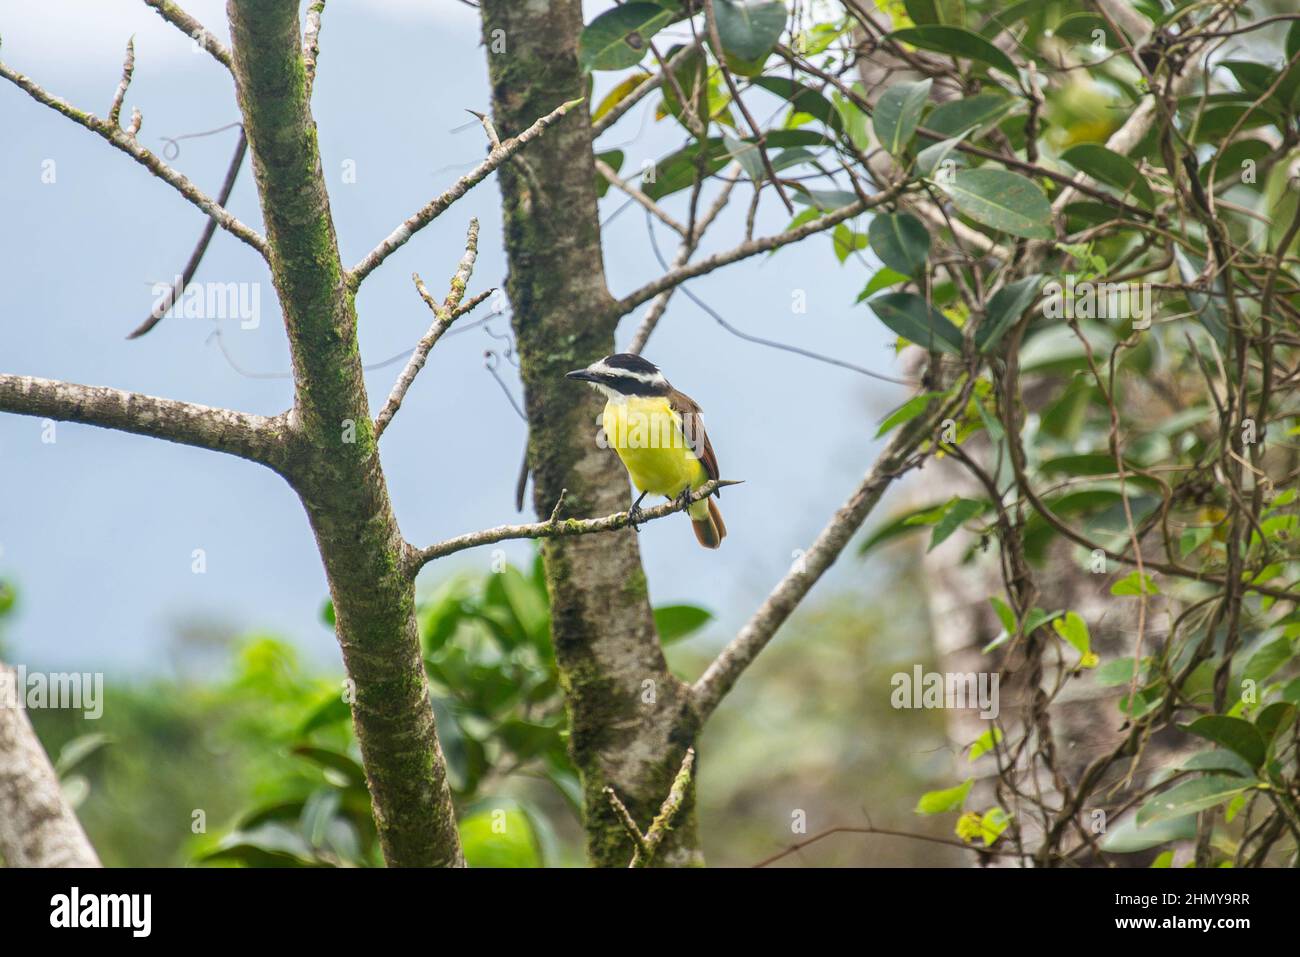 Yellow-throated euphonia (Euphonia hirundinacea), Heliconias Hanging Bridges, Bijagua, Costa Rica Stock Photo